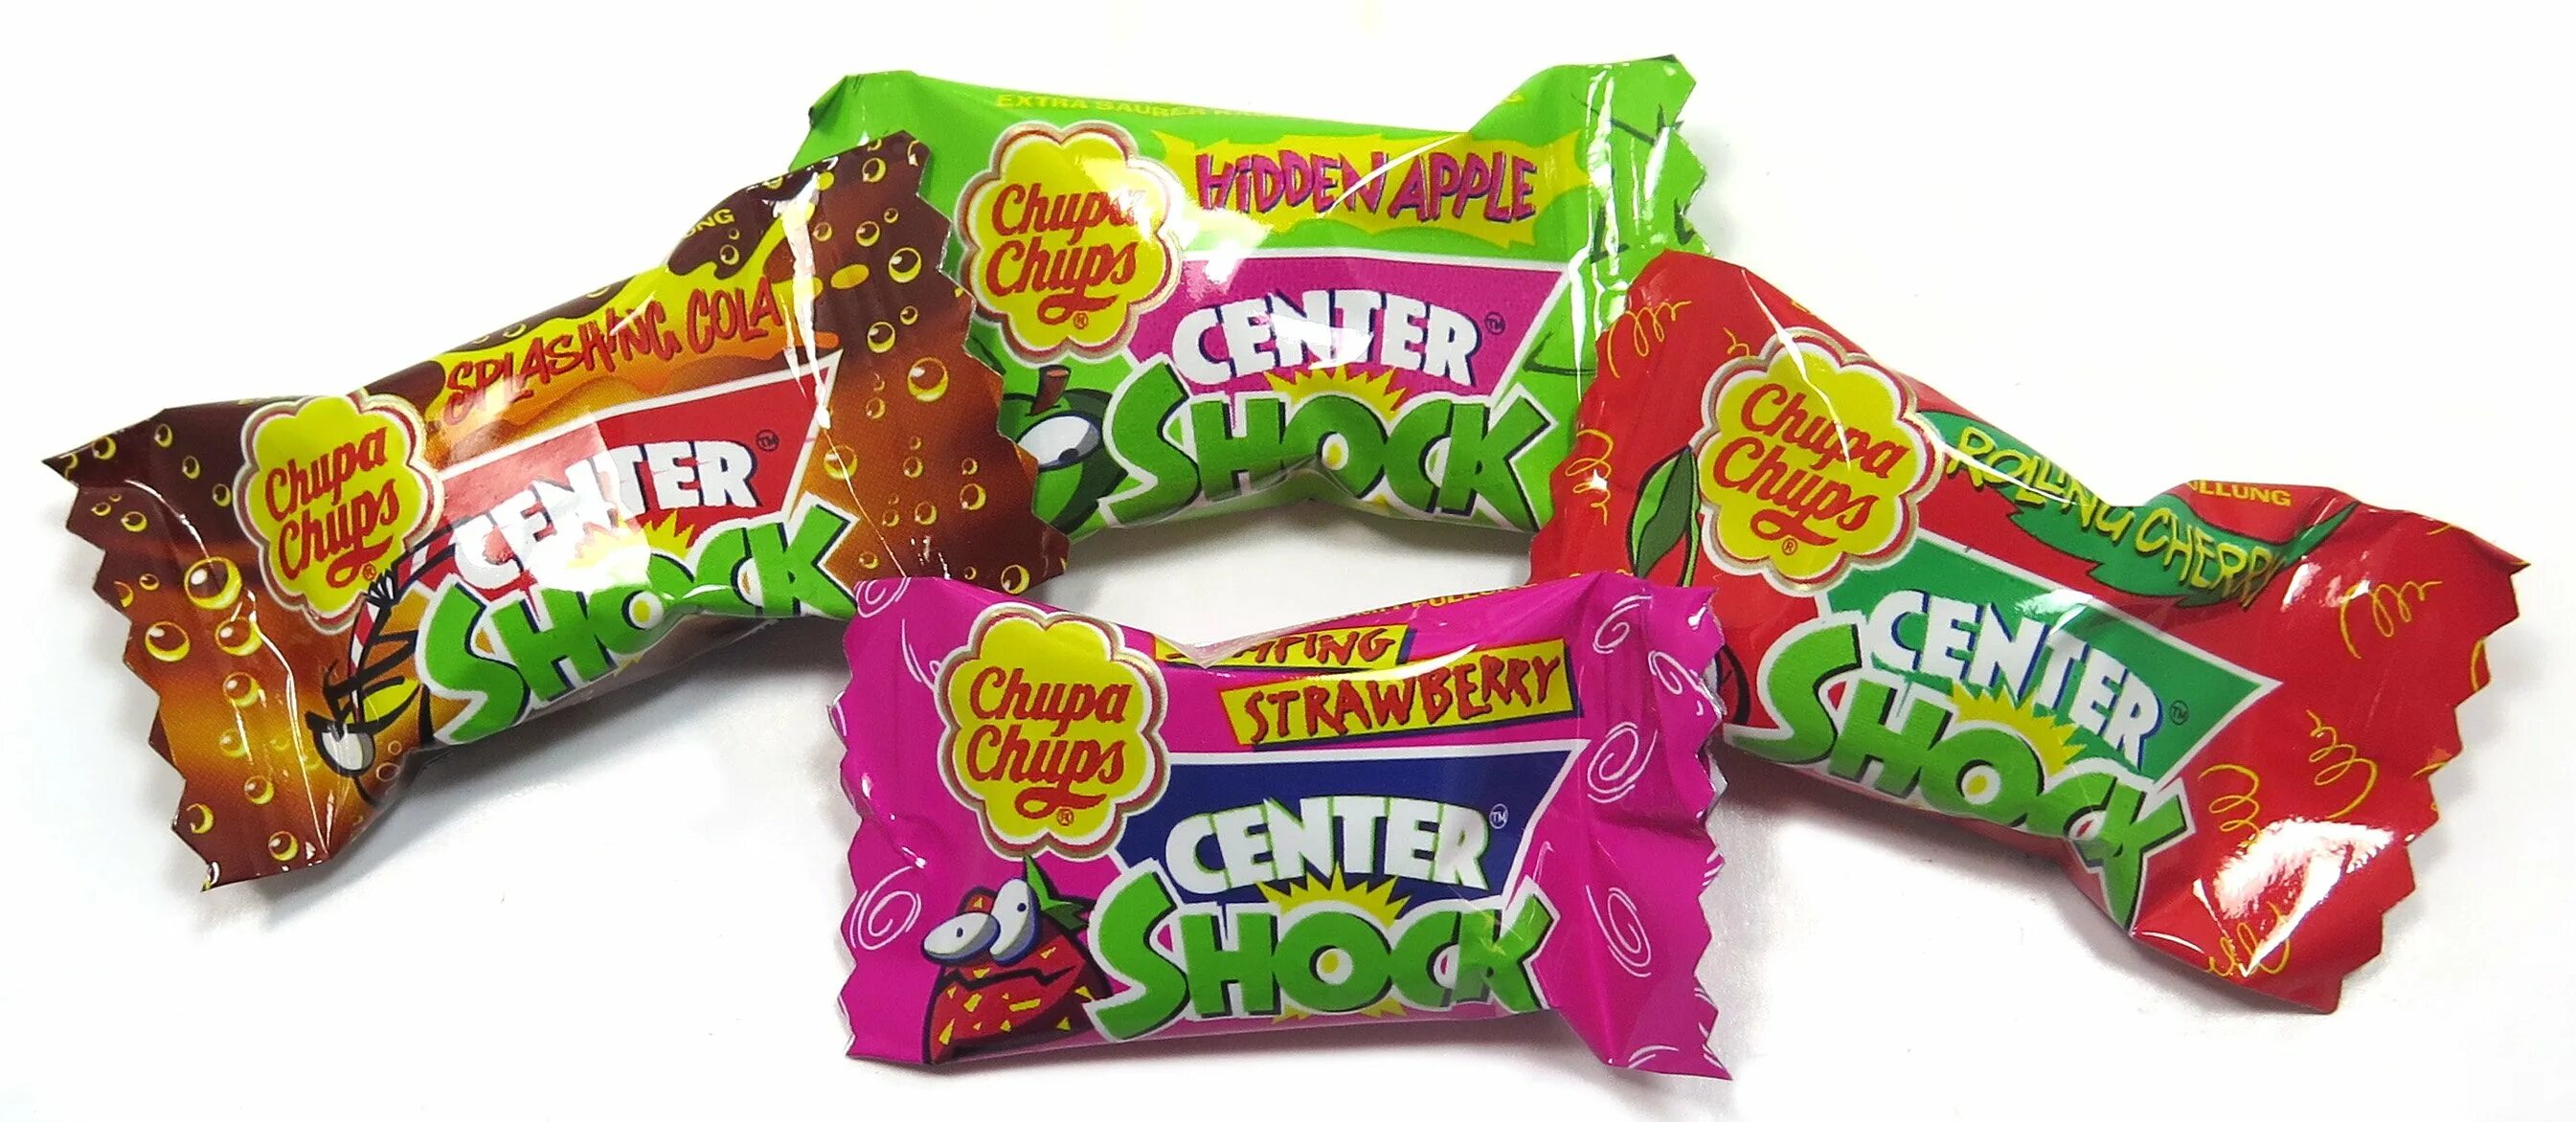 Center Shock жвачка 90е. Кислые конфеты. Конфеты ШОК. Жевательная конфета Shock.